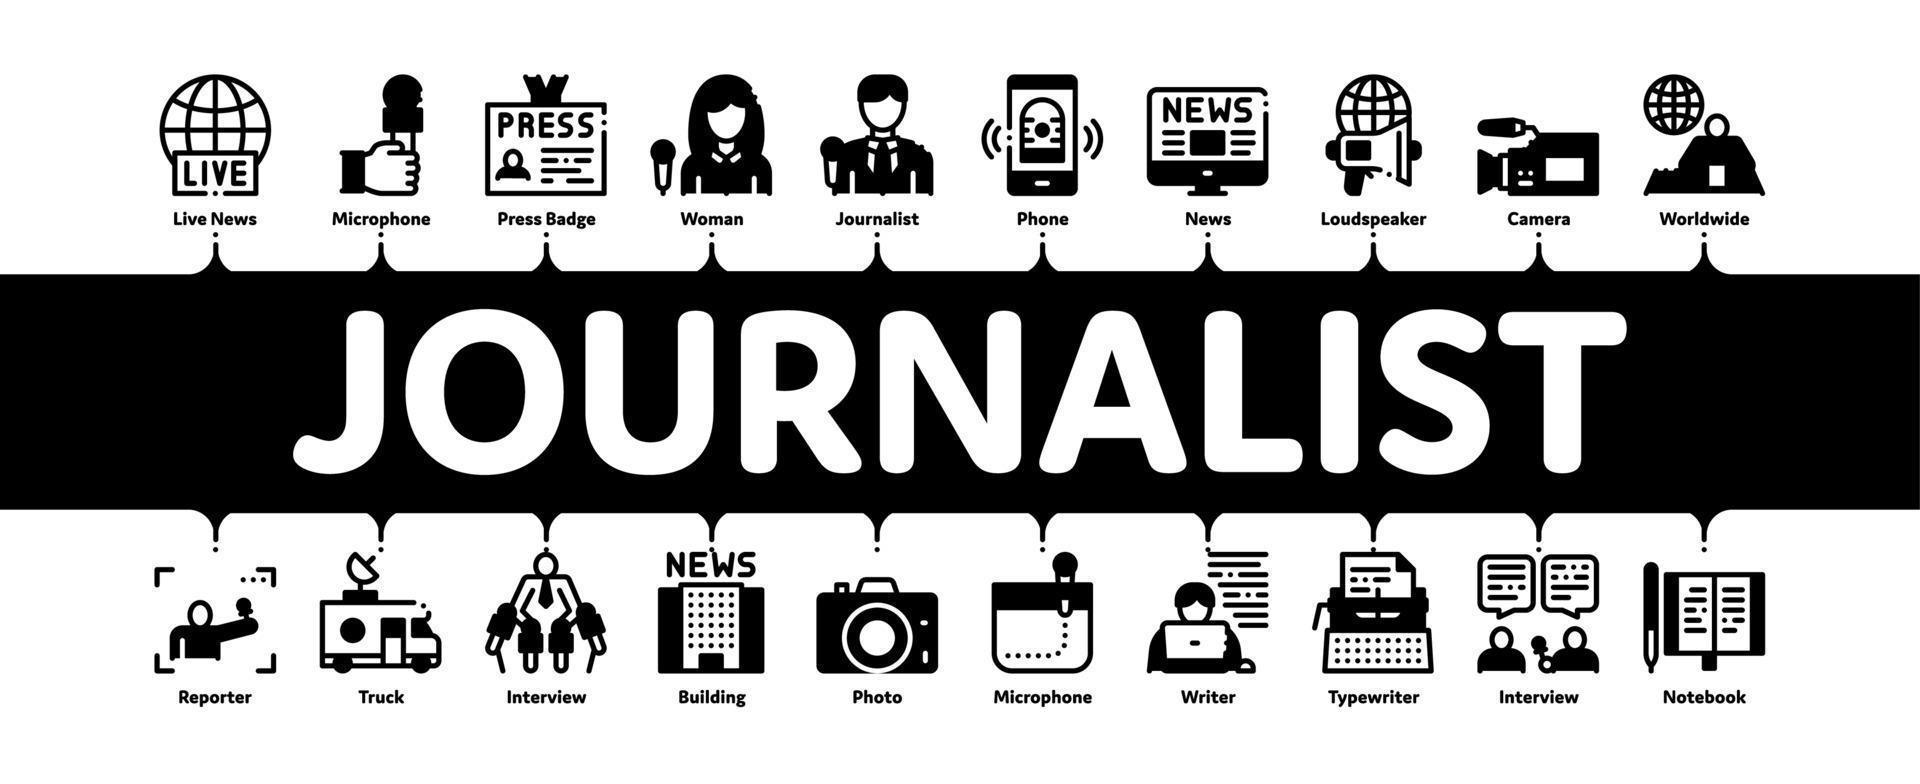 Journalist Reporter Minimal Infographic Banner Vector